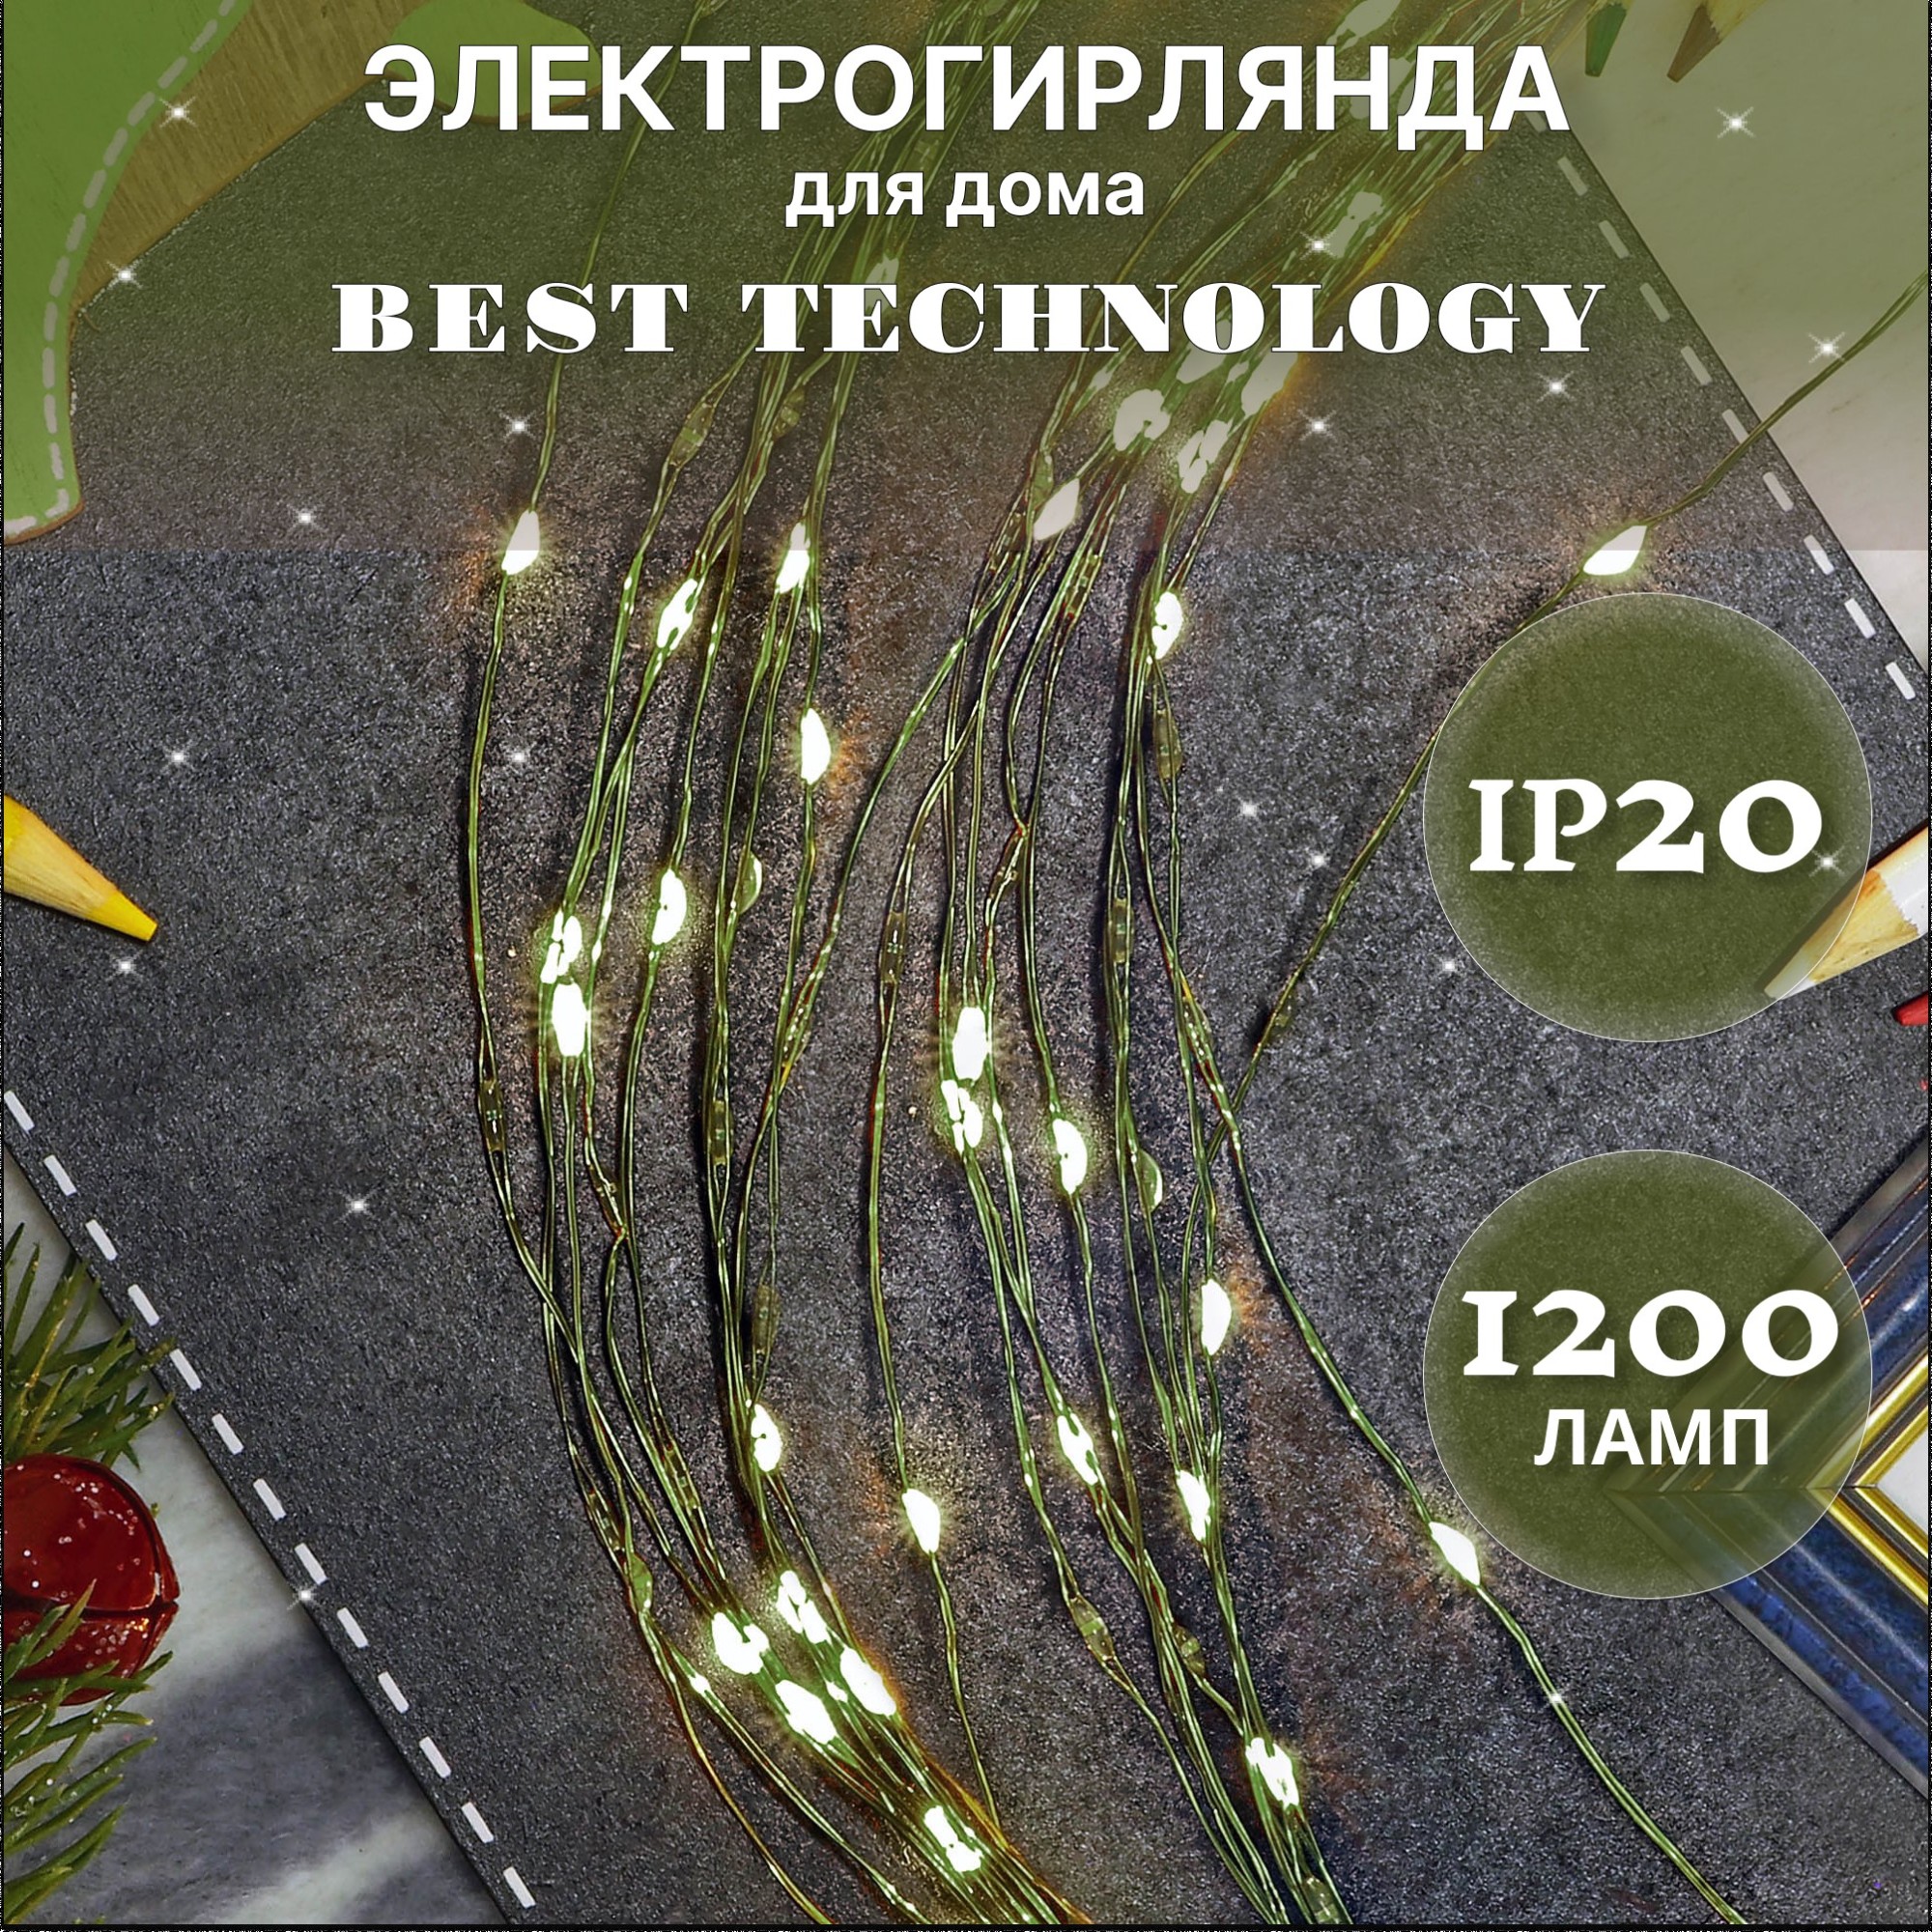 Электрогирлянда Best Technology 1200 led теплый белый, цвет зеленый - фото 2